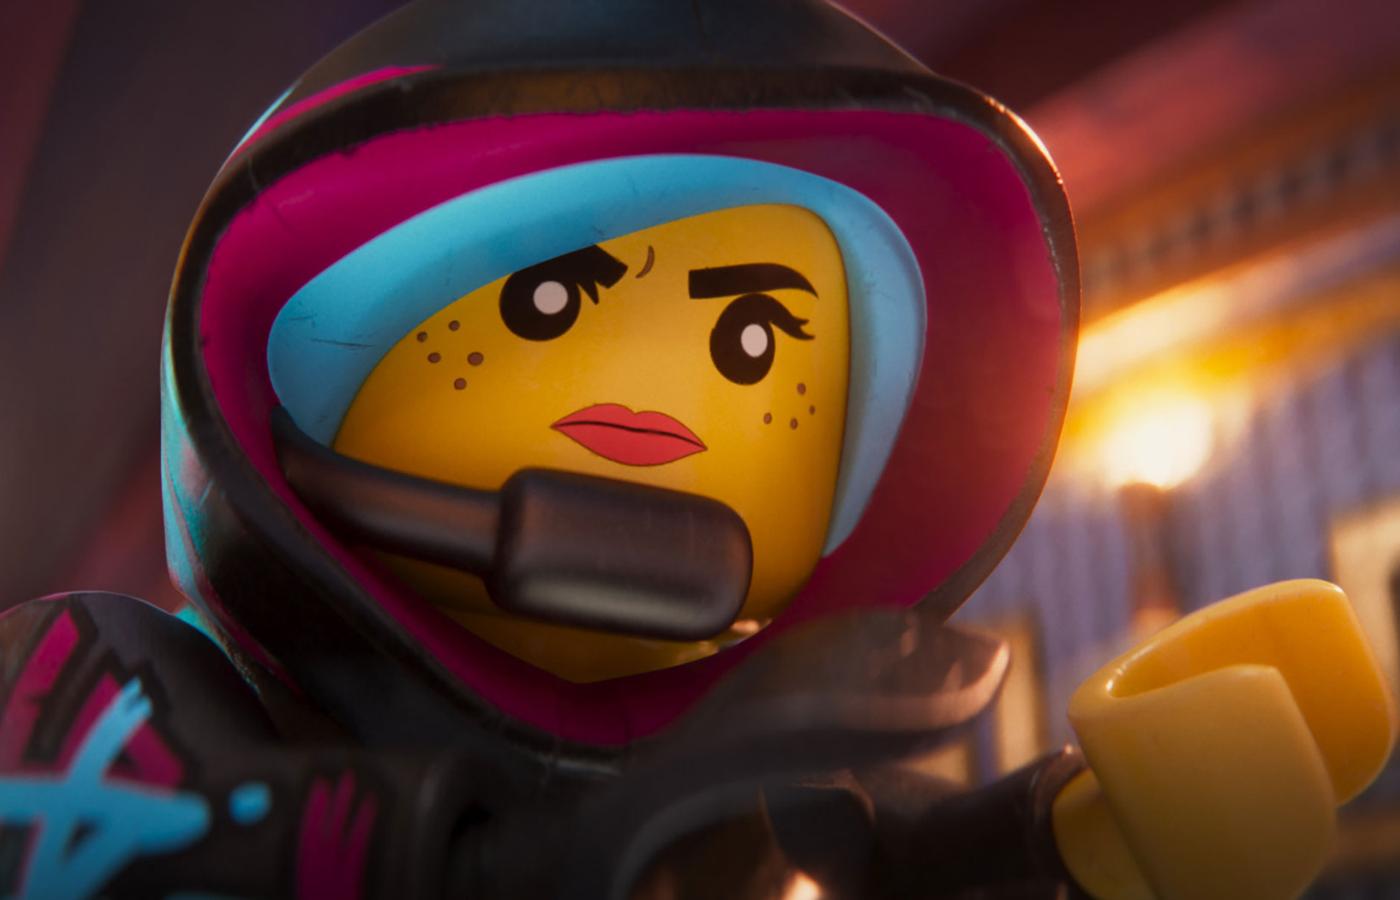 Kadr z filmu animowanego „Lego przygoda 2”.